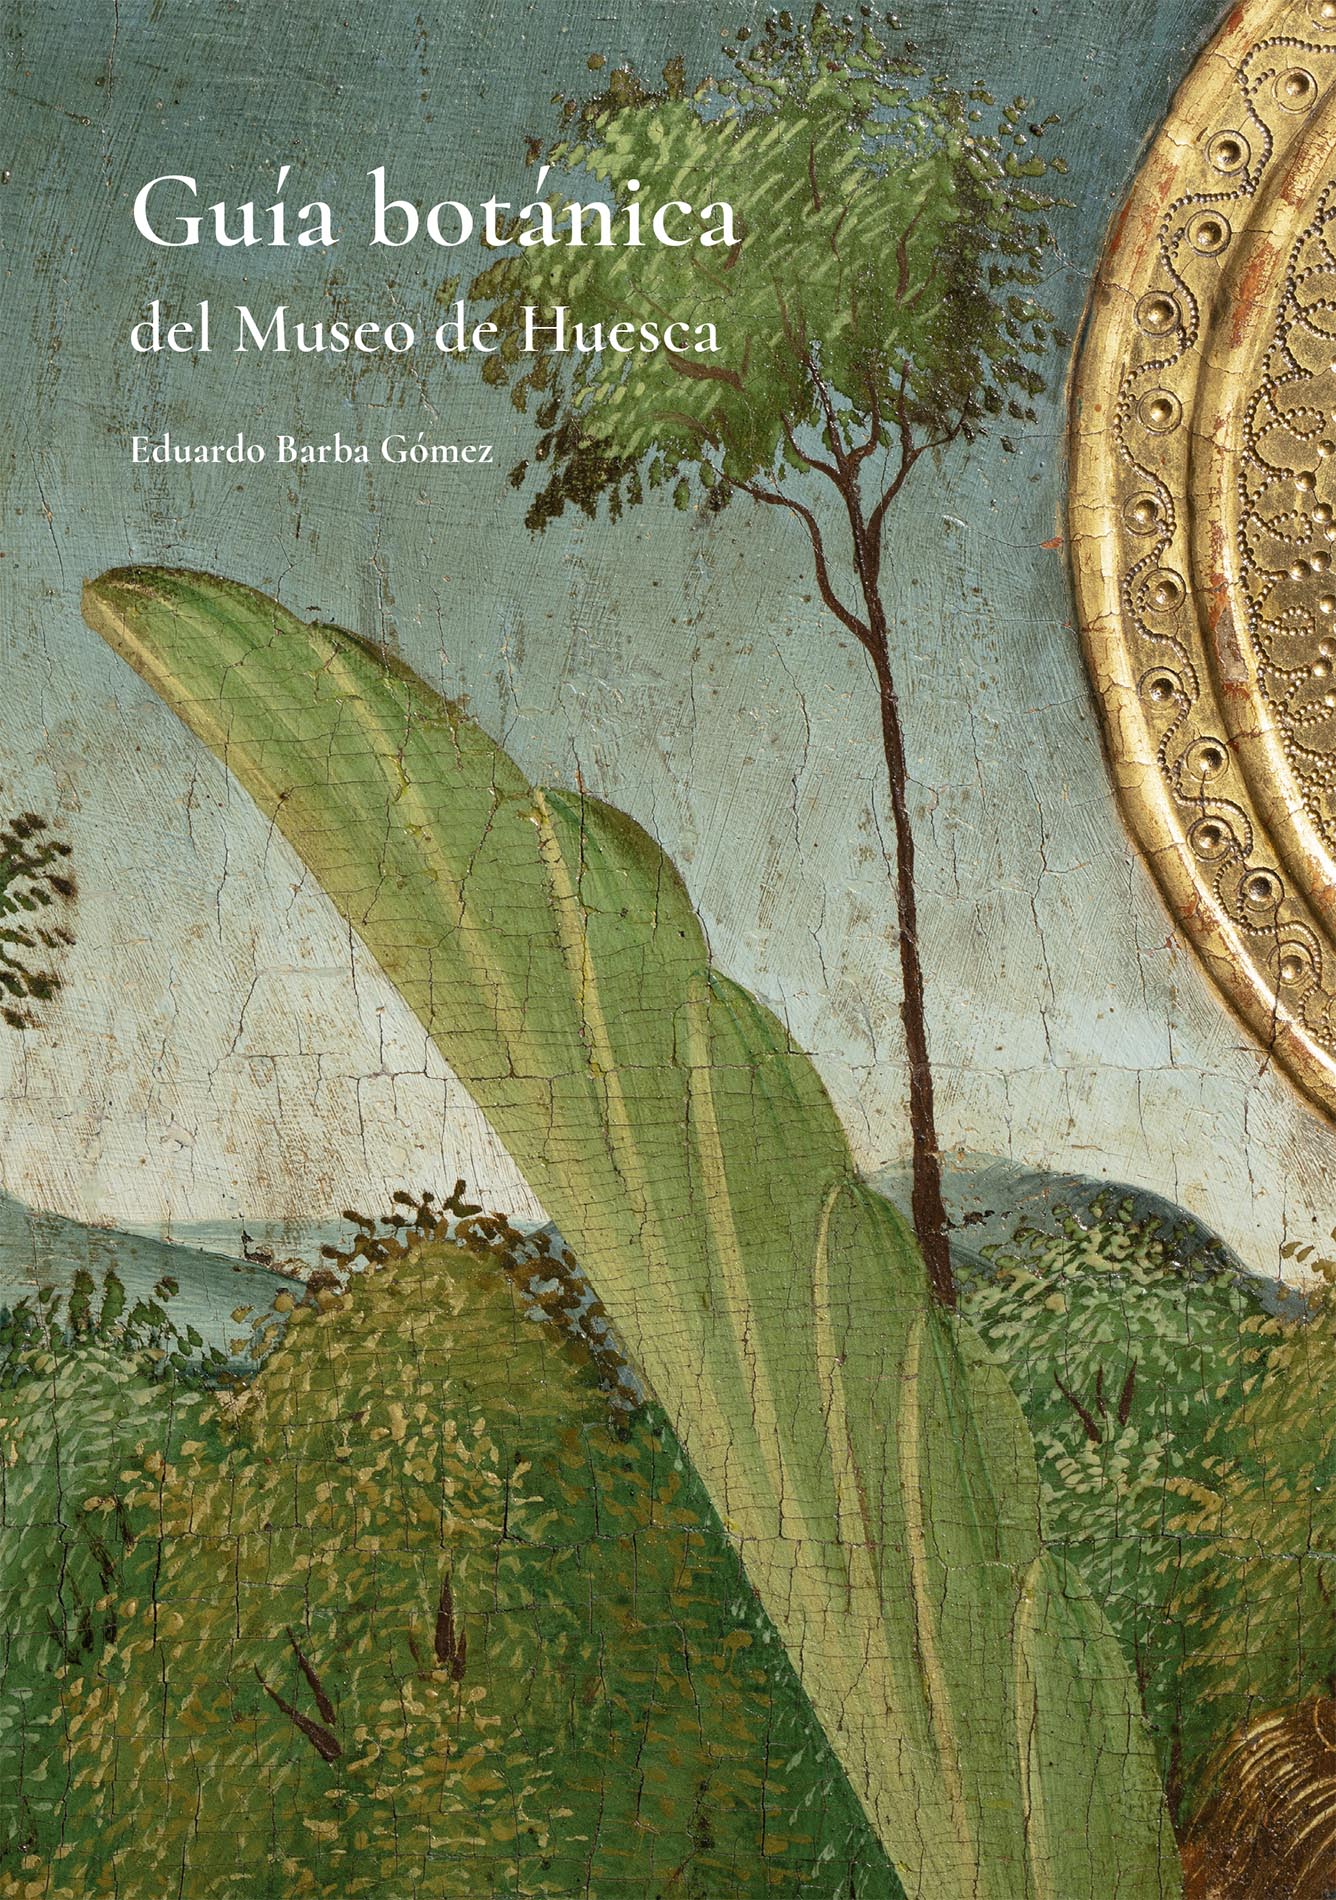 Guía botánica del Museo de Huesca, de Eduardo Barba